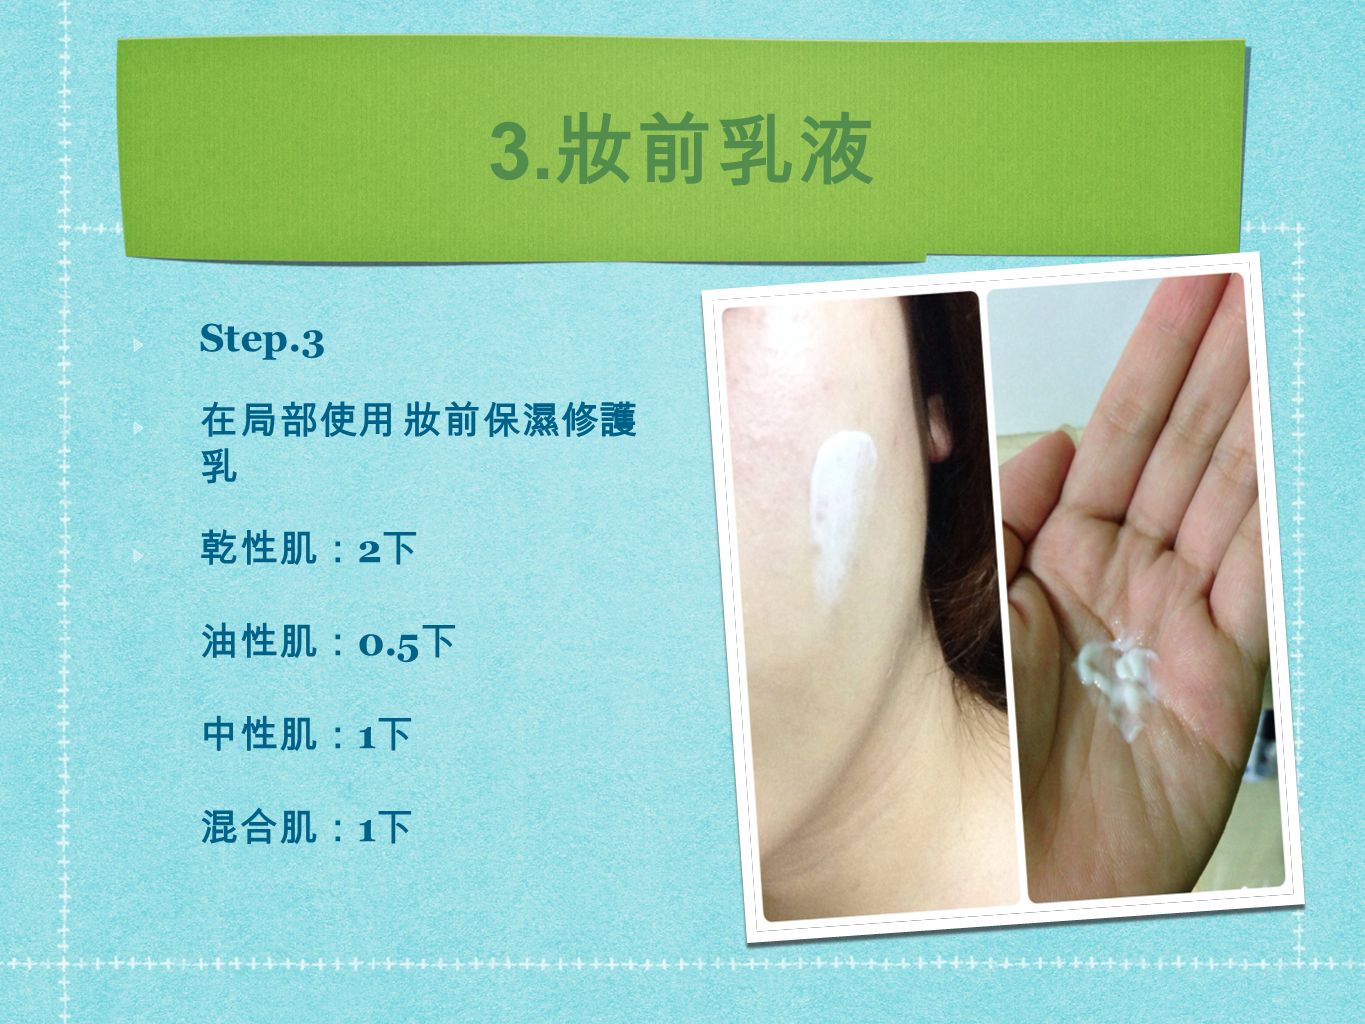 3. 妝前乳液 Step.3 在局部使用 妝前保濕修護 乳 乾性肌： 2 下 油性肌： 0.5 下 中性肌： 1 下 混合肌： 1 下